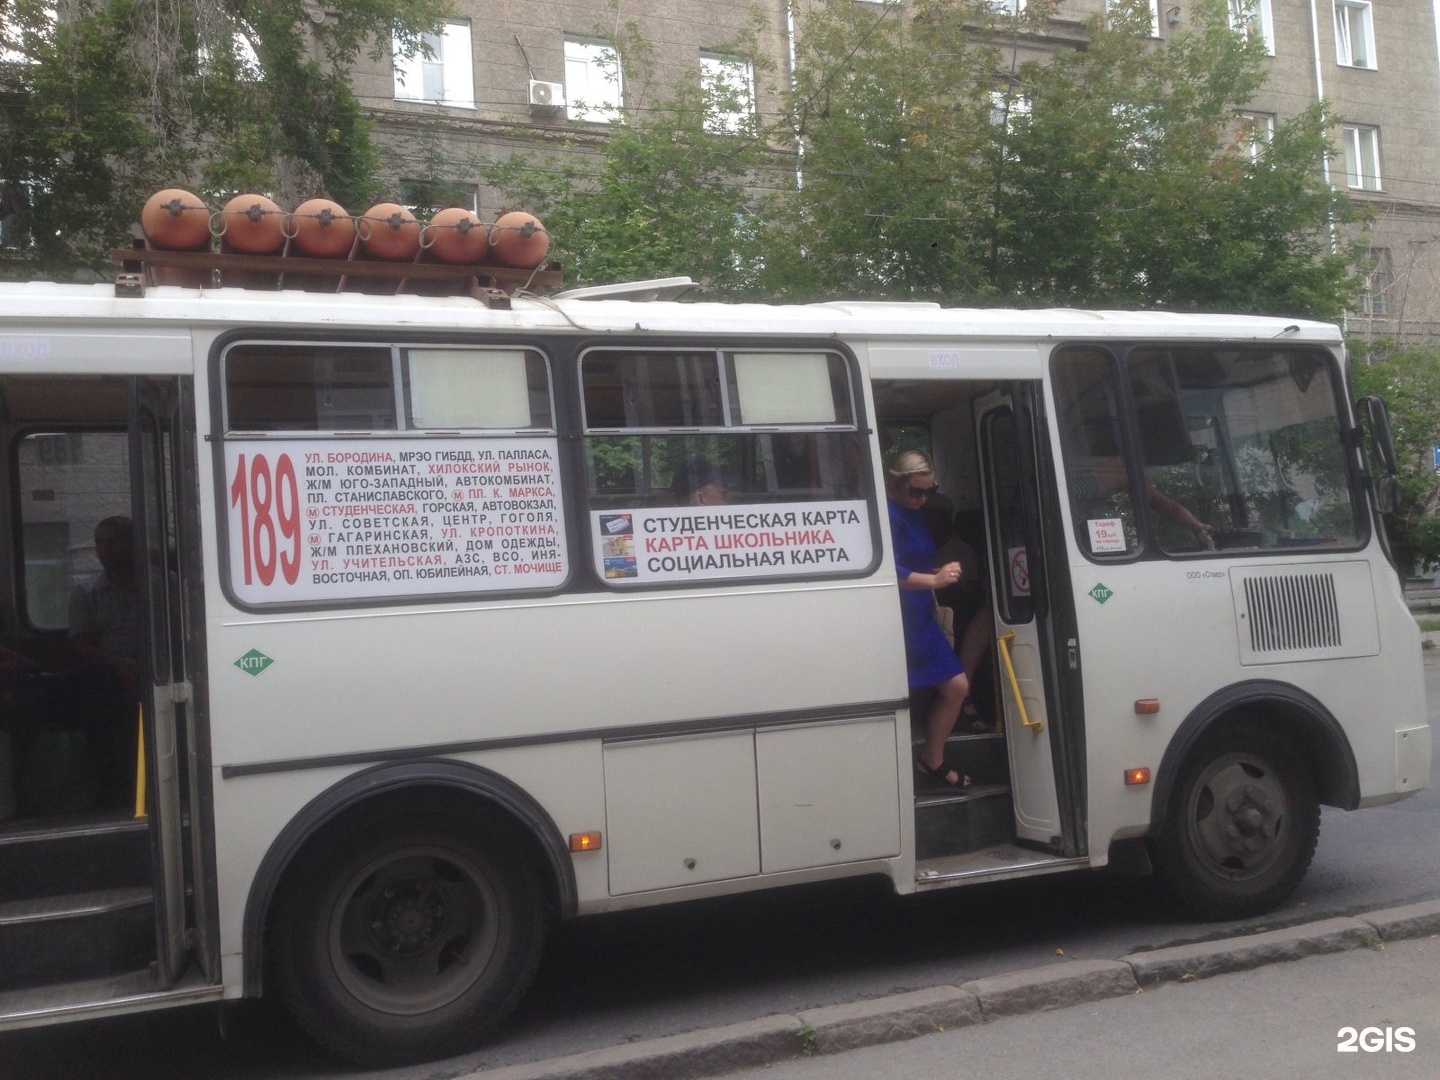 Расписание 189 автобуса новосибирск. 189л автобус Новосибирск. 189 Автобус Новосибирск маршрут. Расписание автобусов 189 Новосибирск Учительская. Автобус Железногорск 189.